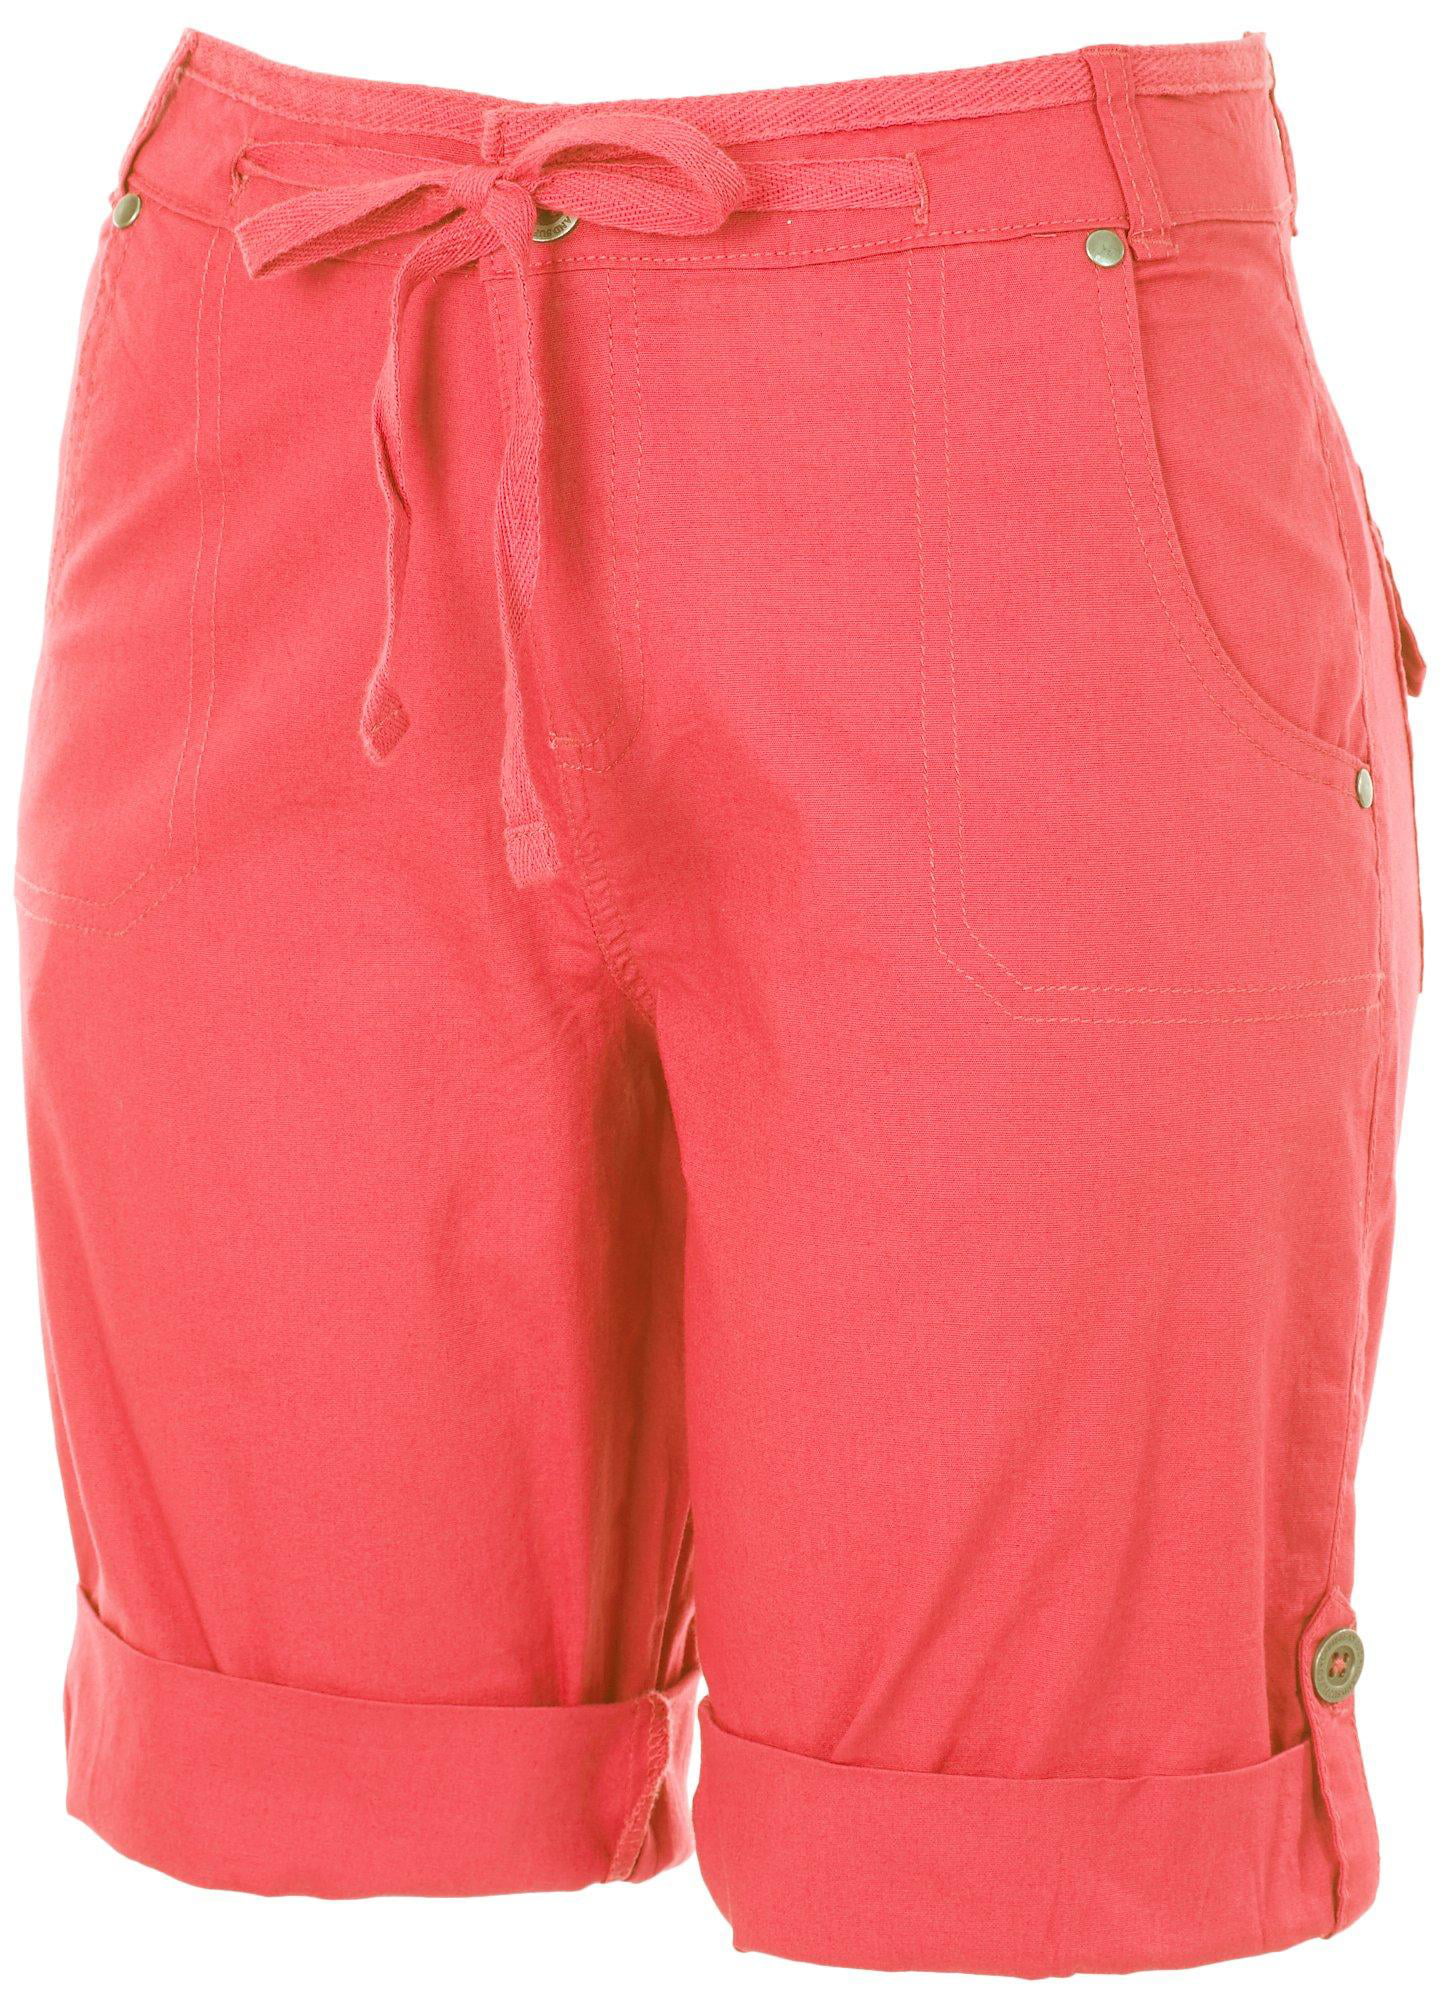 Caribbean Joe - Caribbean Joe Womens Mid Rise Chino Shorts 6 Pink ...